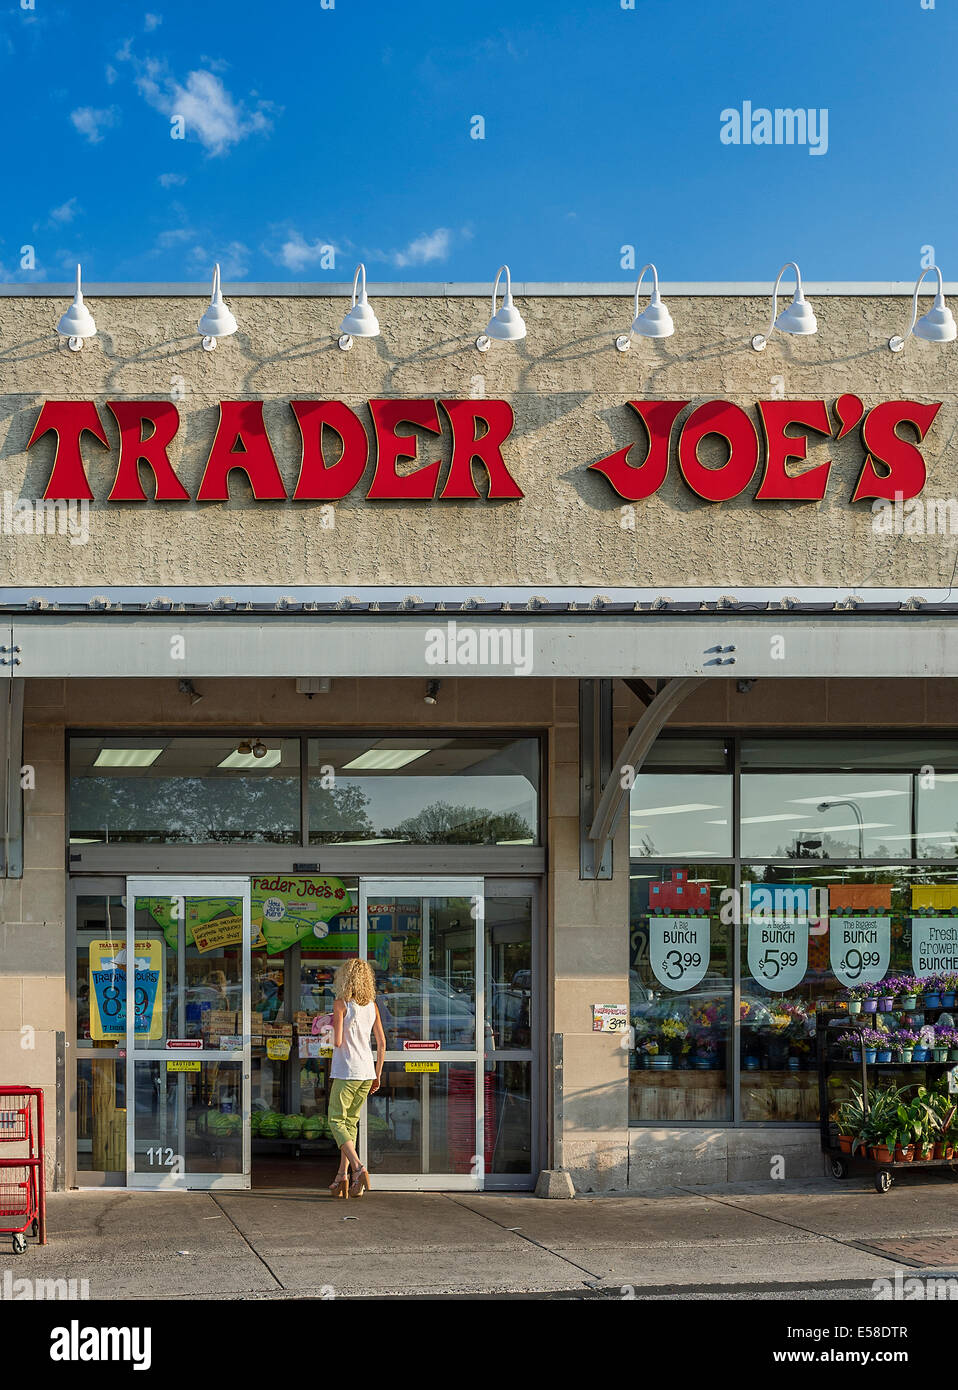 Extérieur de Trader Joe's, magasin d'alimentation spécialisée Ardmore, Pennsylvanie, USA Banque D'Images